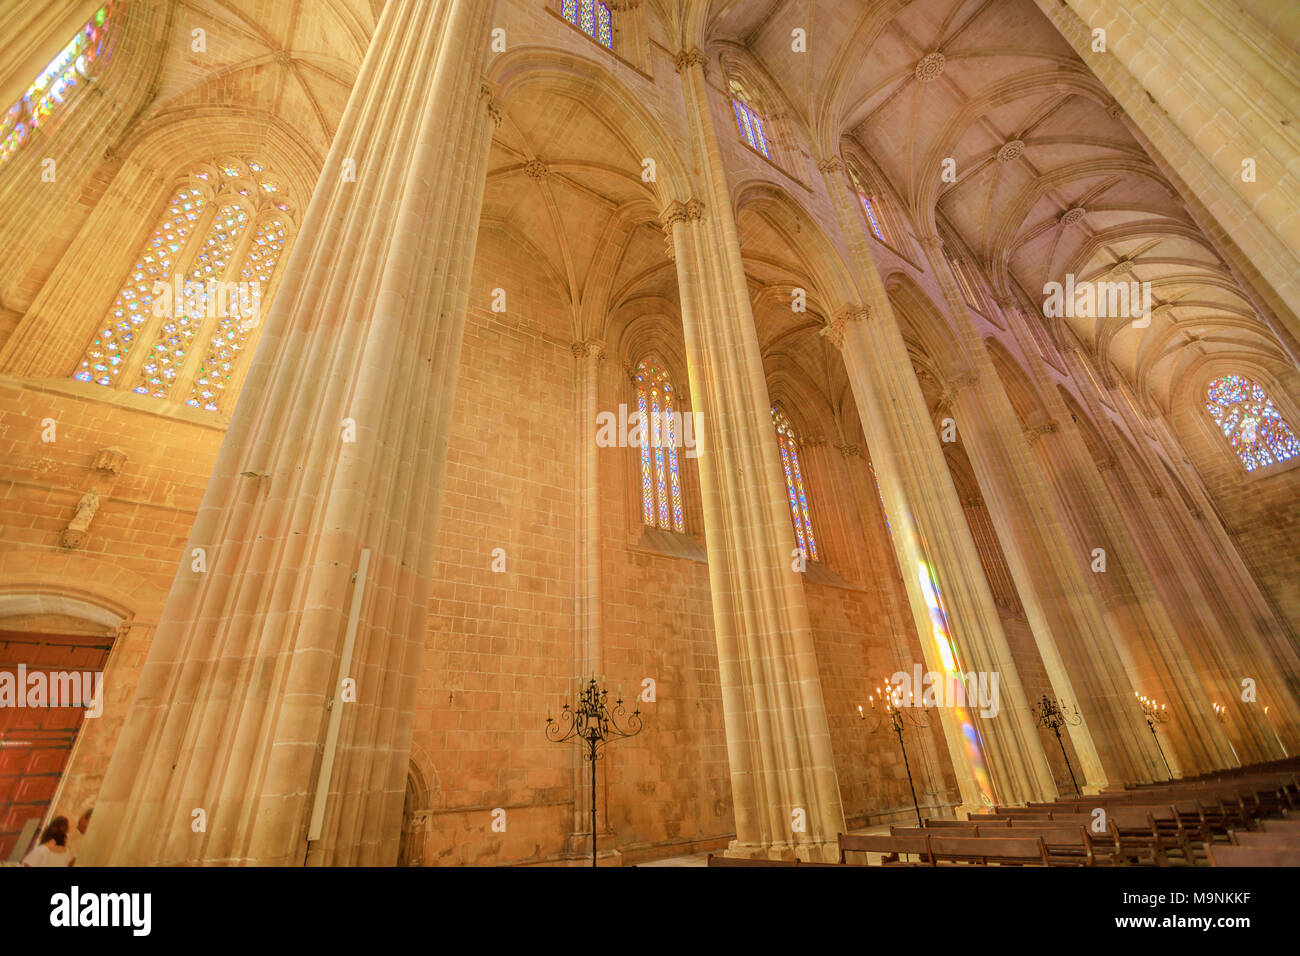 Batalha, Portugal - 16. August 2017: hohe gotische Decken mit Glasmalereien in das Hauptschiff der Kathedrale der Heiligen Maria des Sieges in das Kloster von Batalha, die zum UNESCO-Weltkulturerbe zählt. In Portugal. Stockfoto